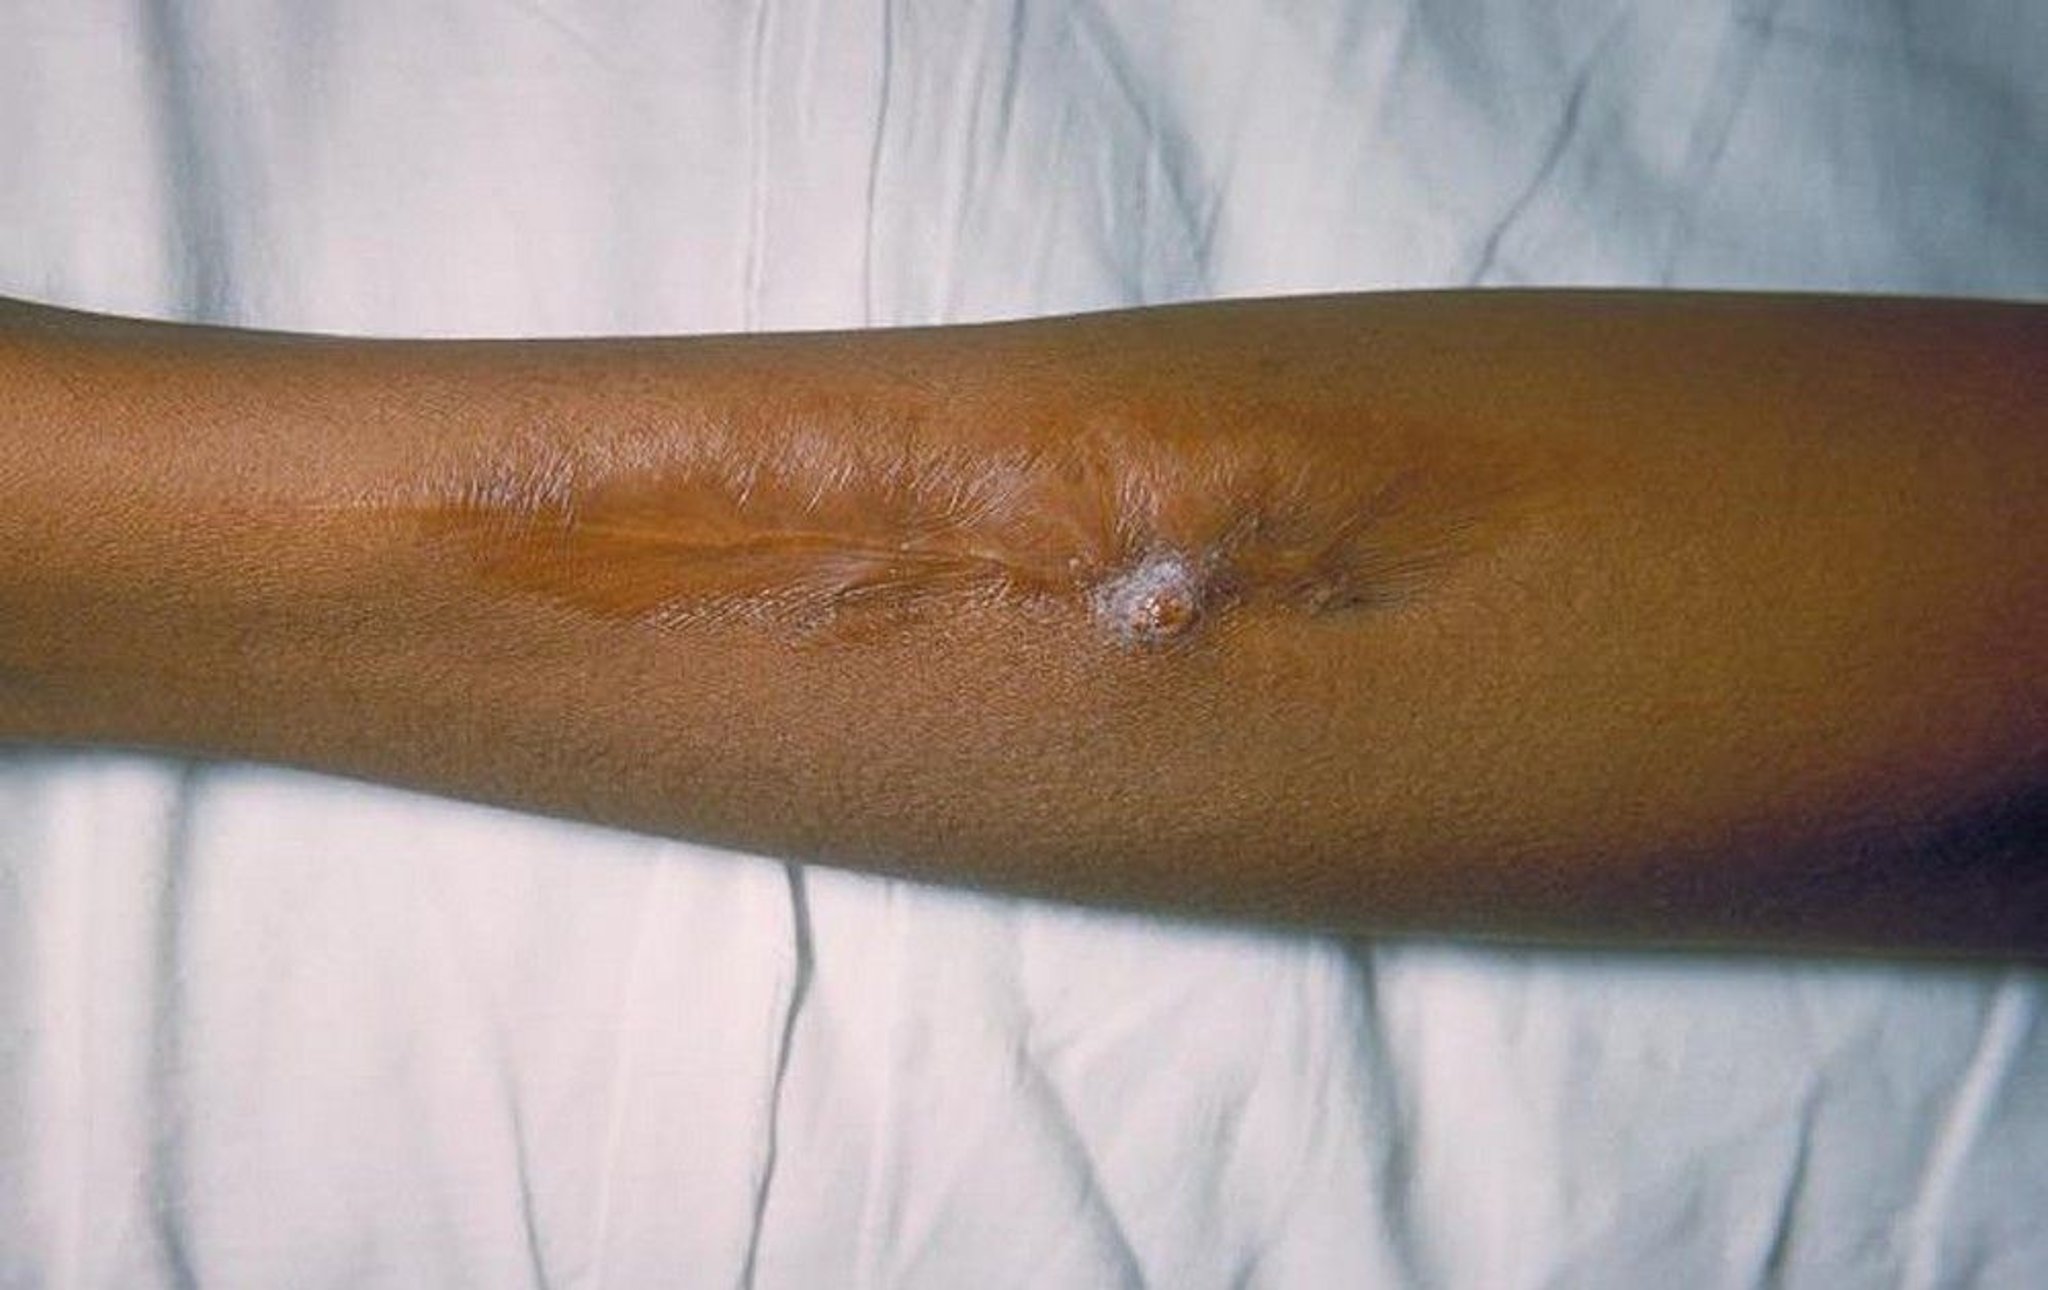 Salmonella (Skin Lesion)